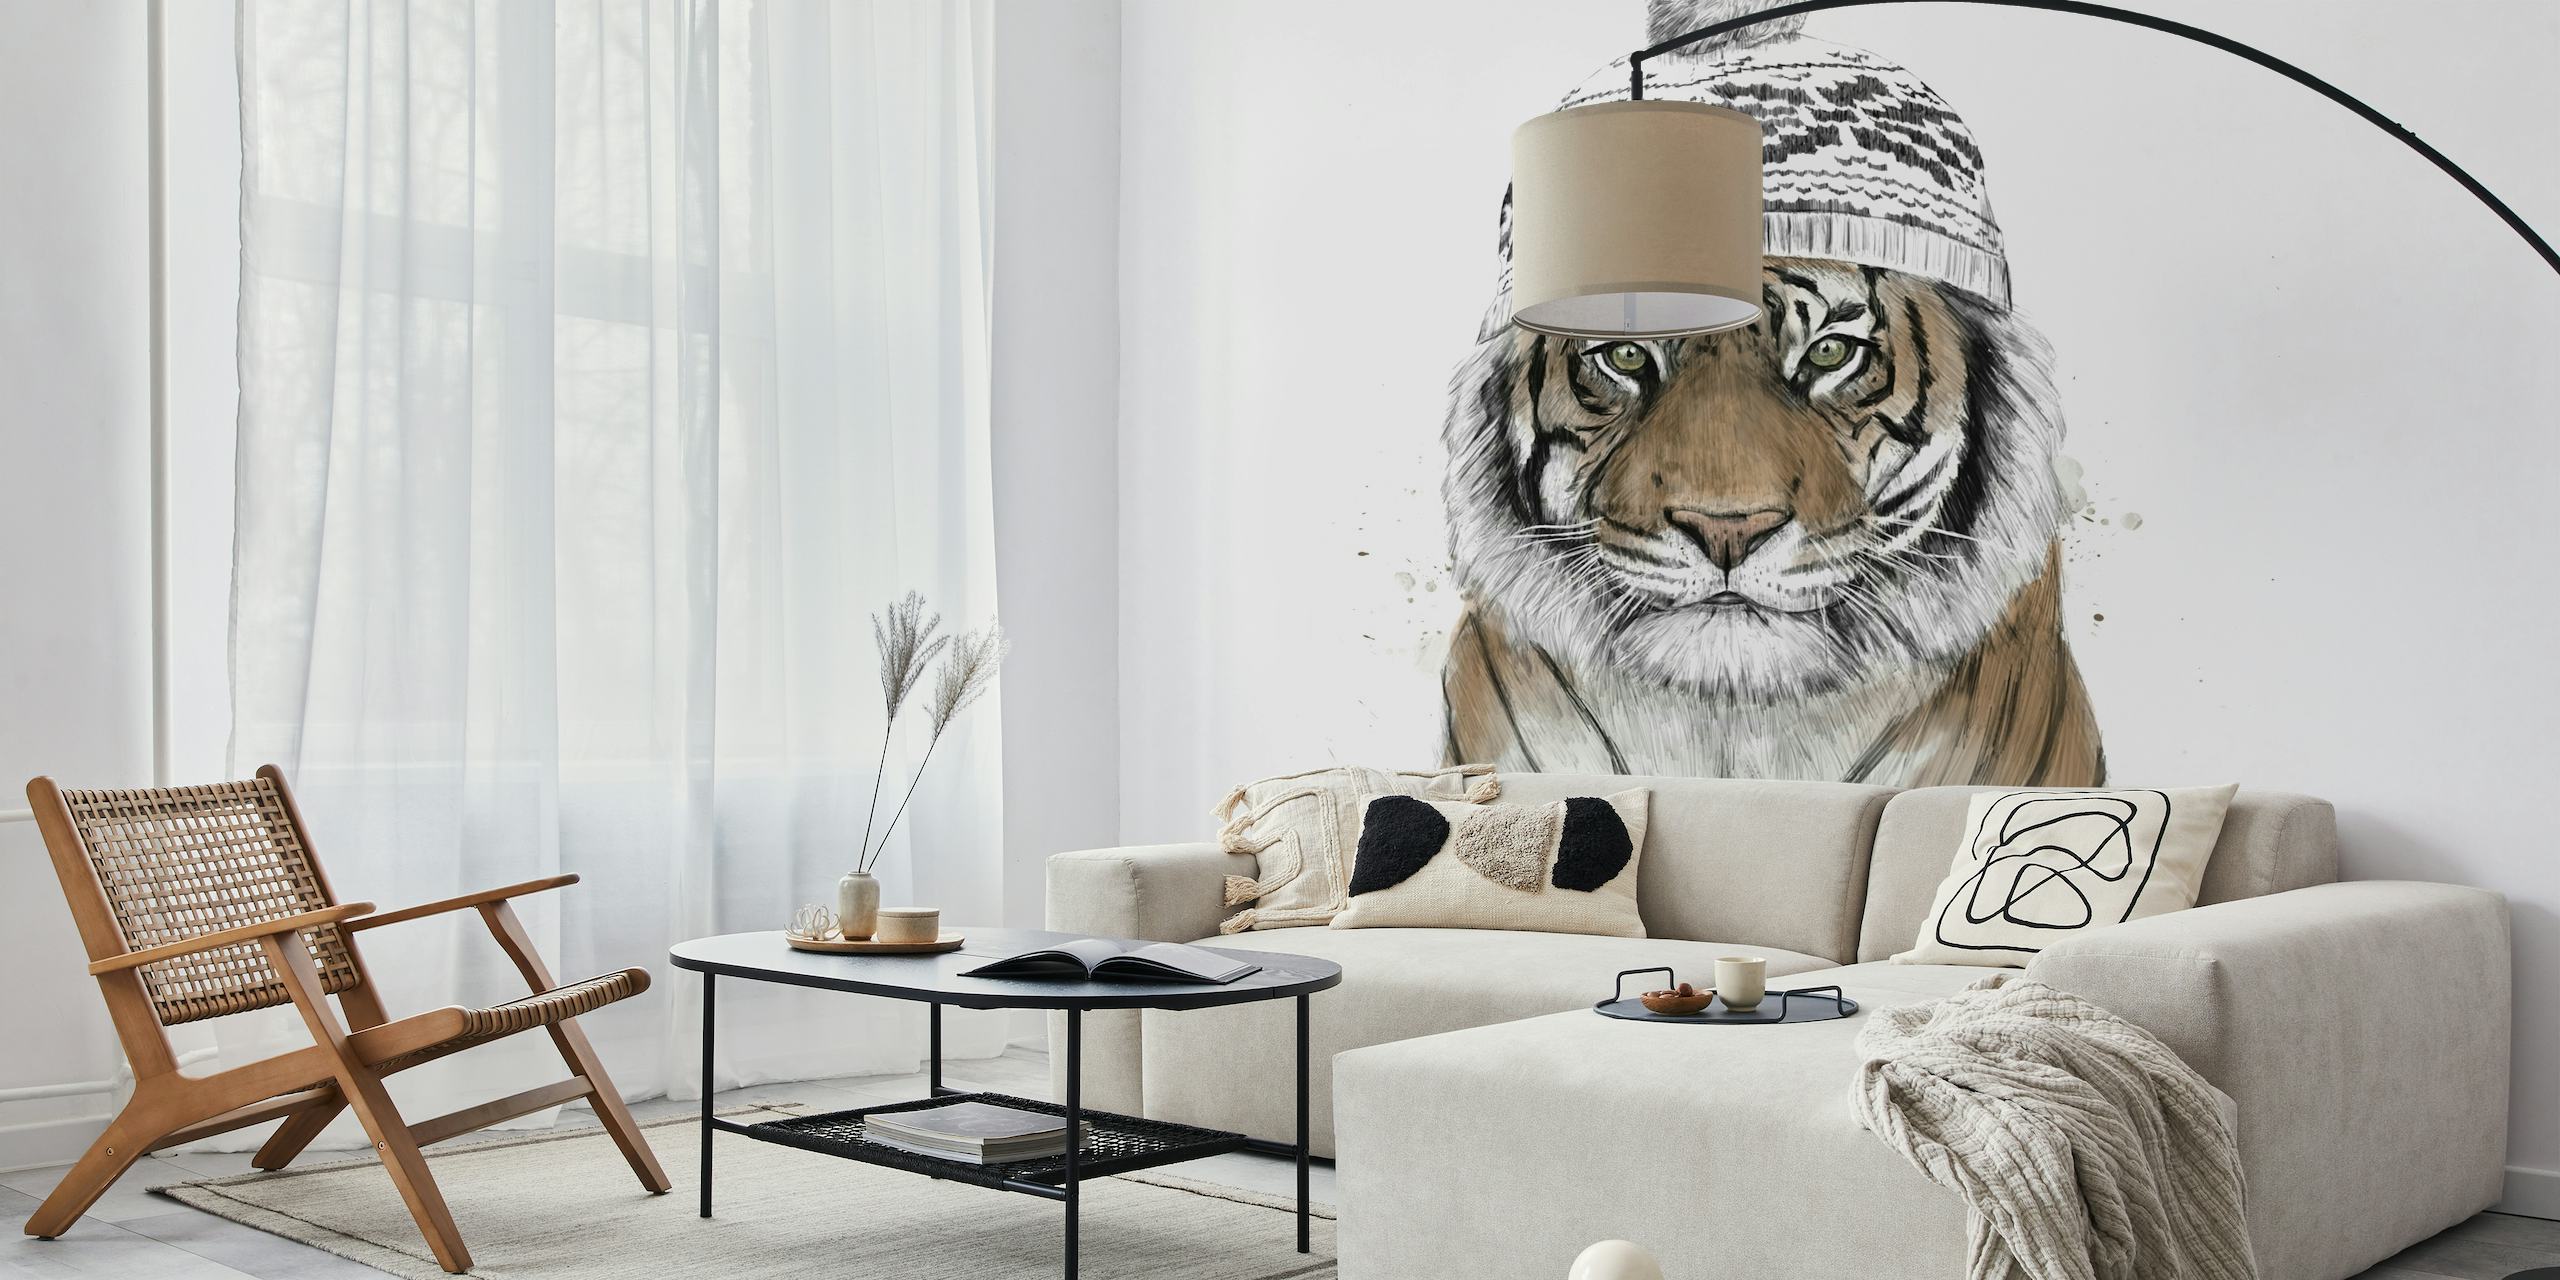 Fototapeta z tygrysem syberyjskim przedstawiająca szczegółową ilustrację twarzy tygrysa na białym tle